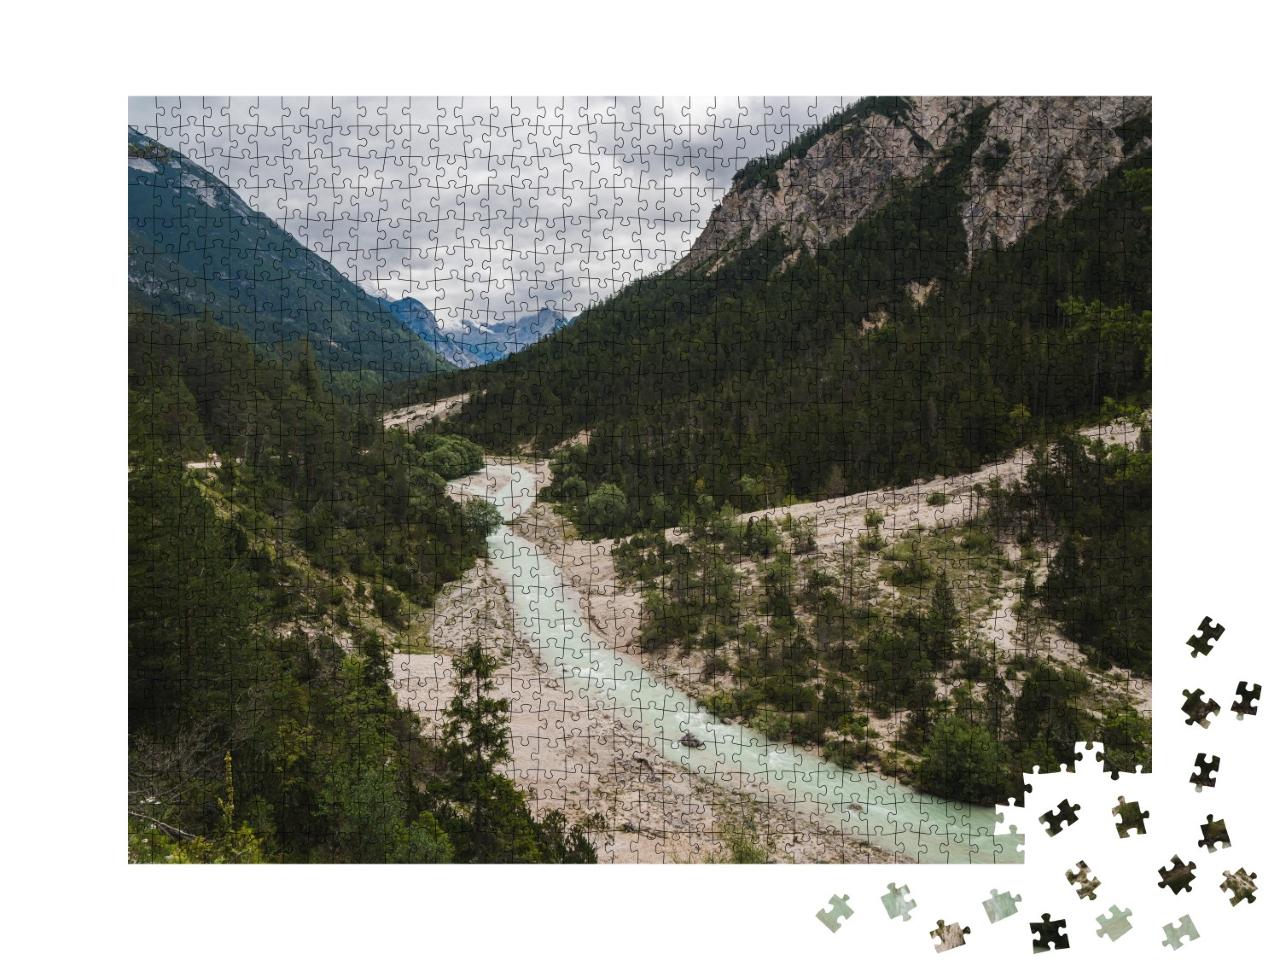 Puzzle de 1000 pièces « Isar sauvage dans les Alpes autrichiennes »